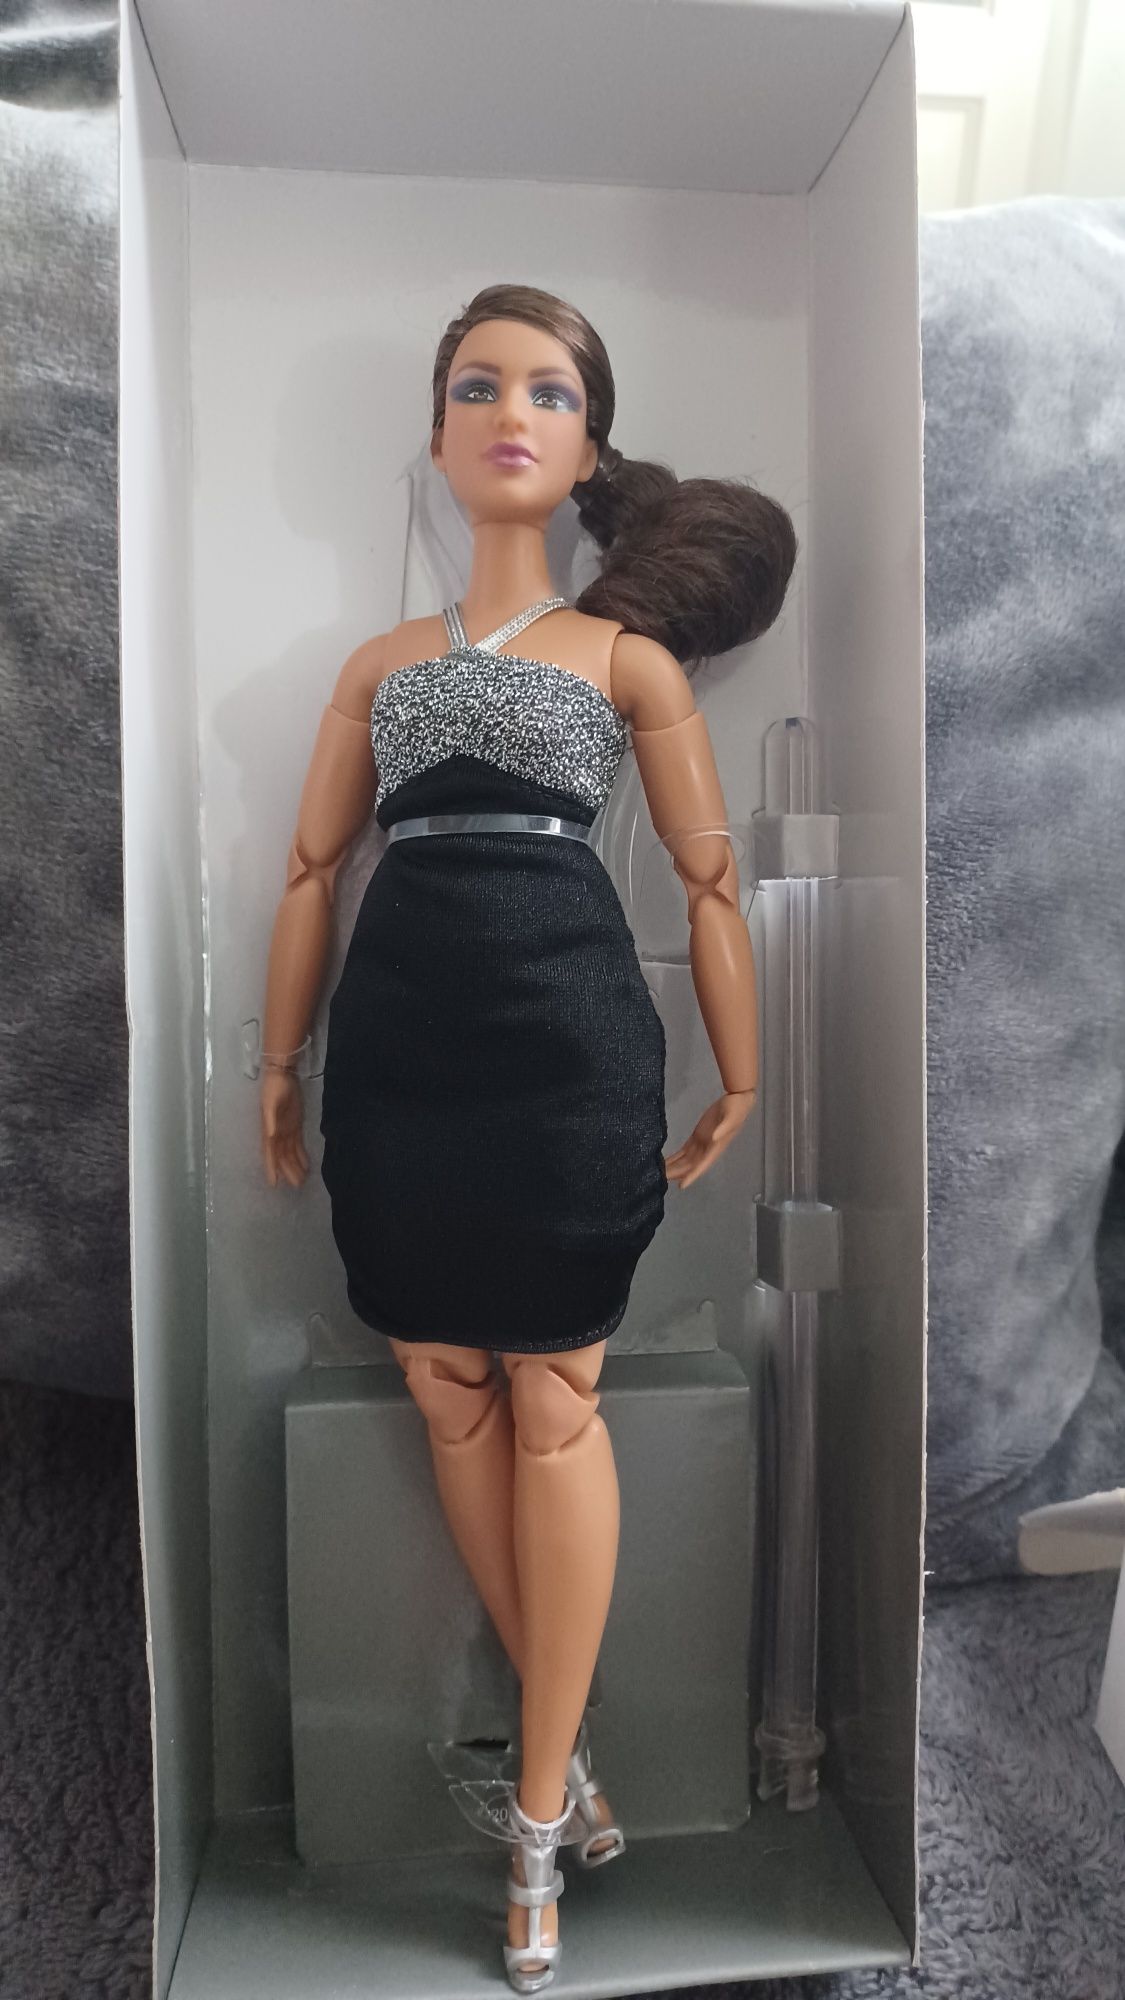 Lalka Barbie Signature Looks 12 Doll NIB kolekcjonerska mattel
Lalka B